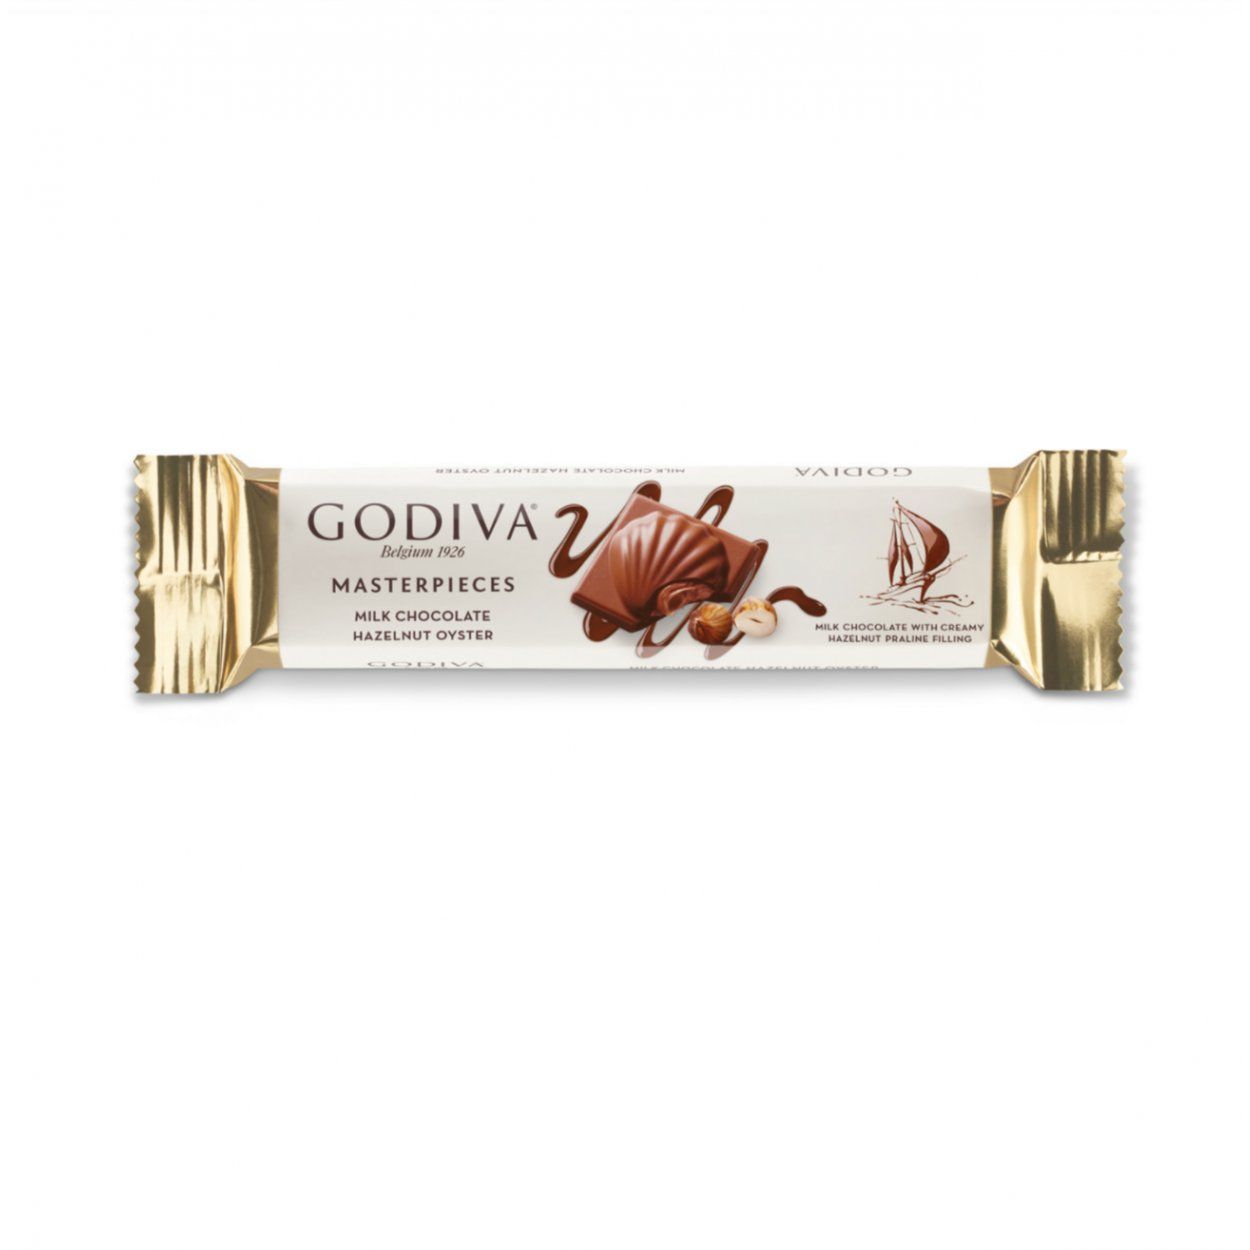 703217-godiva-masterpieces-findikli-cikolata